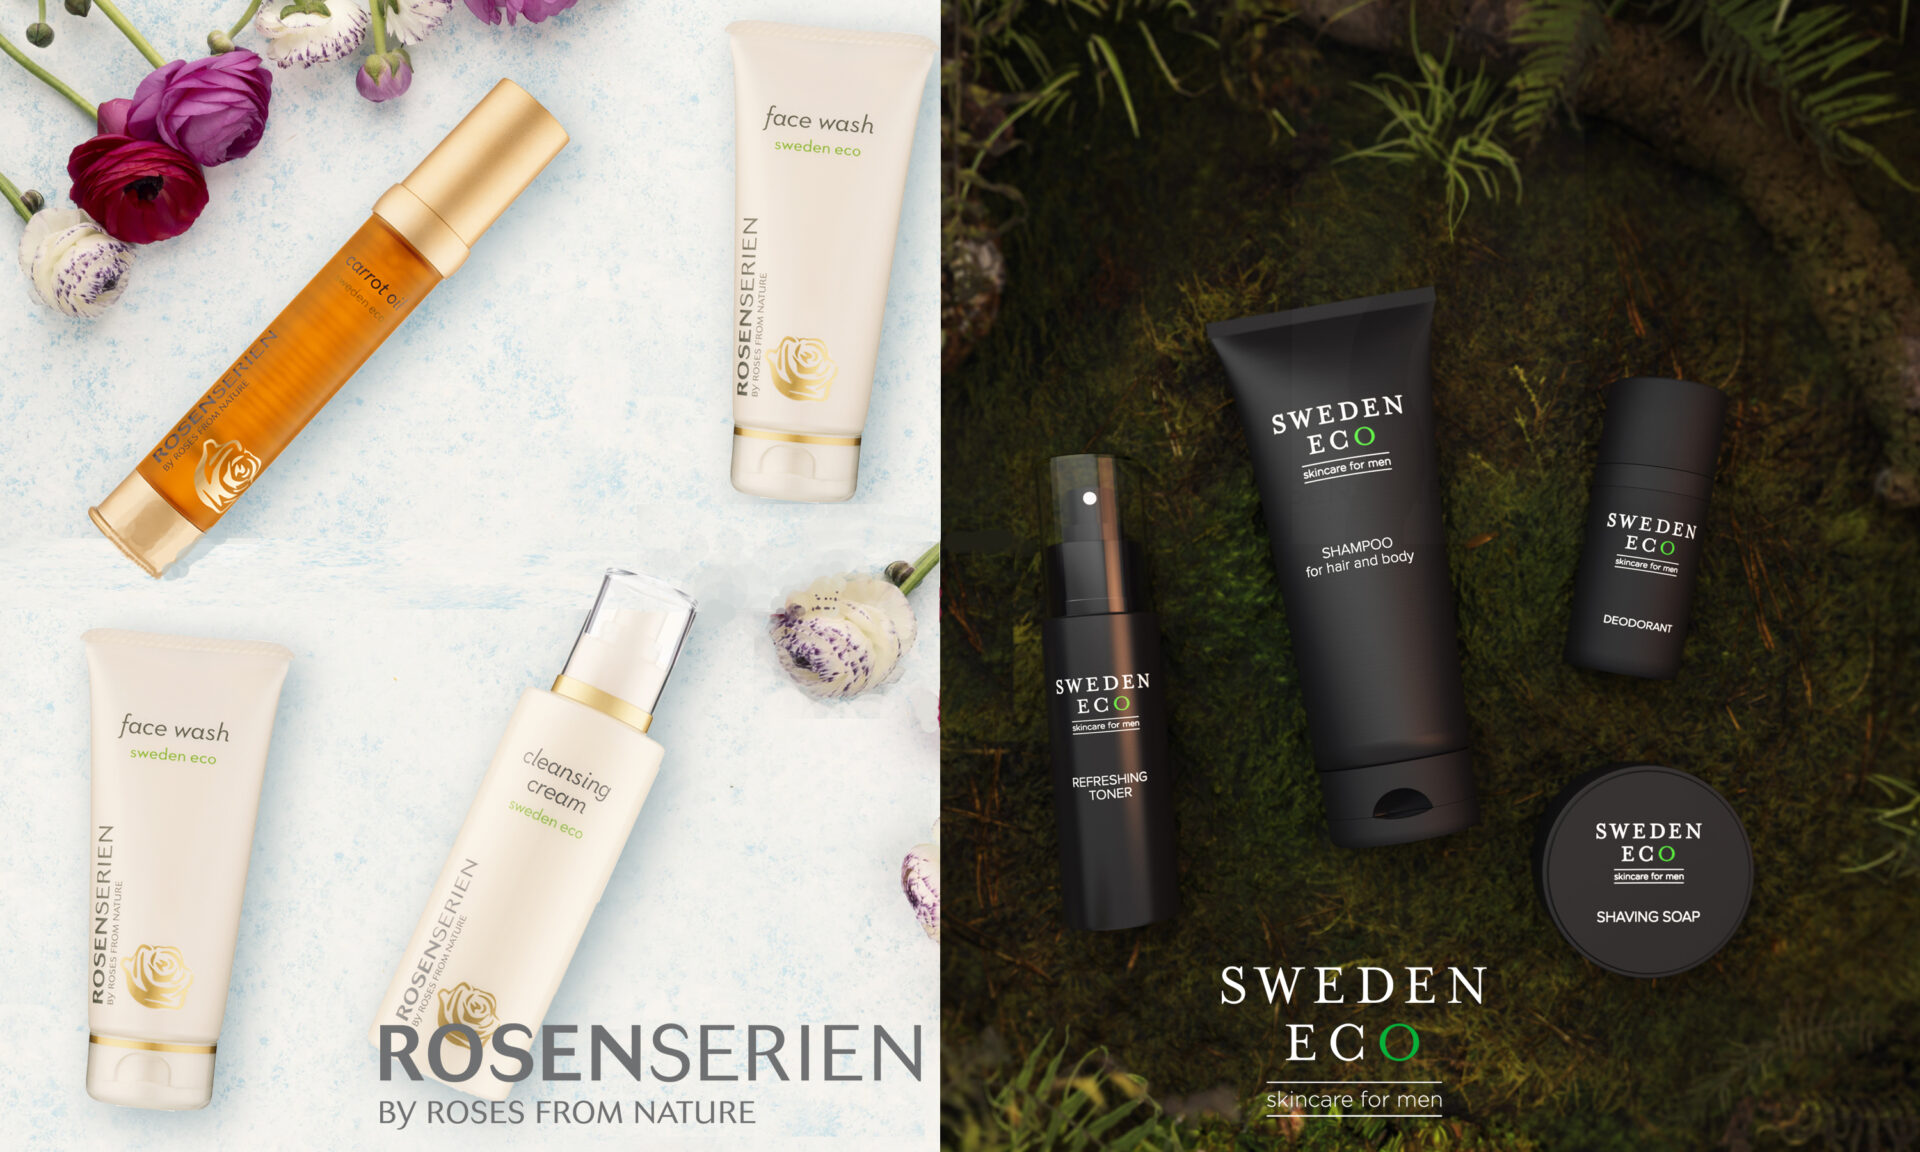 Kom & testa Rosenserien & Sweden Eco Skincare for Men!